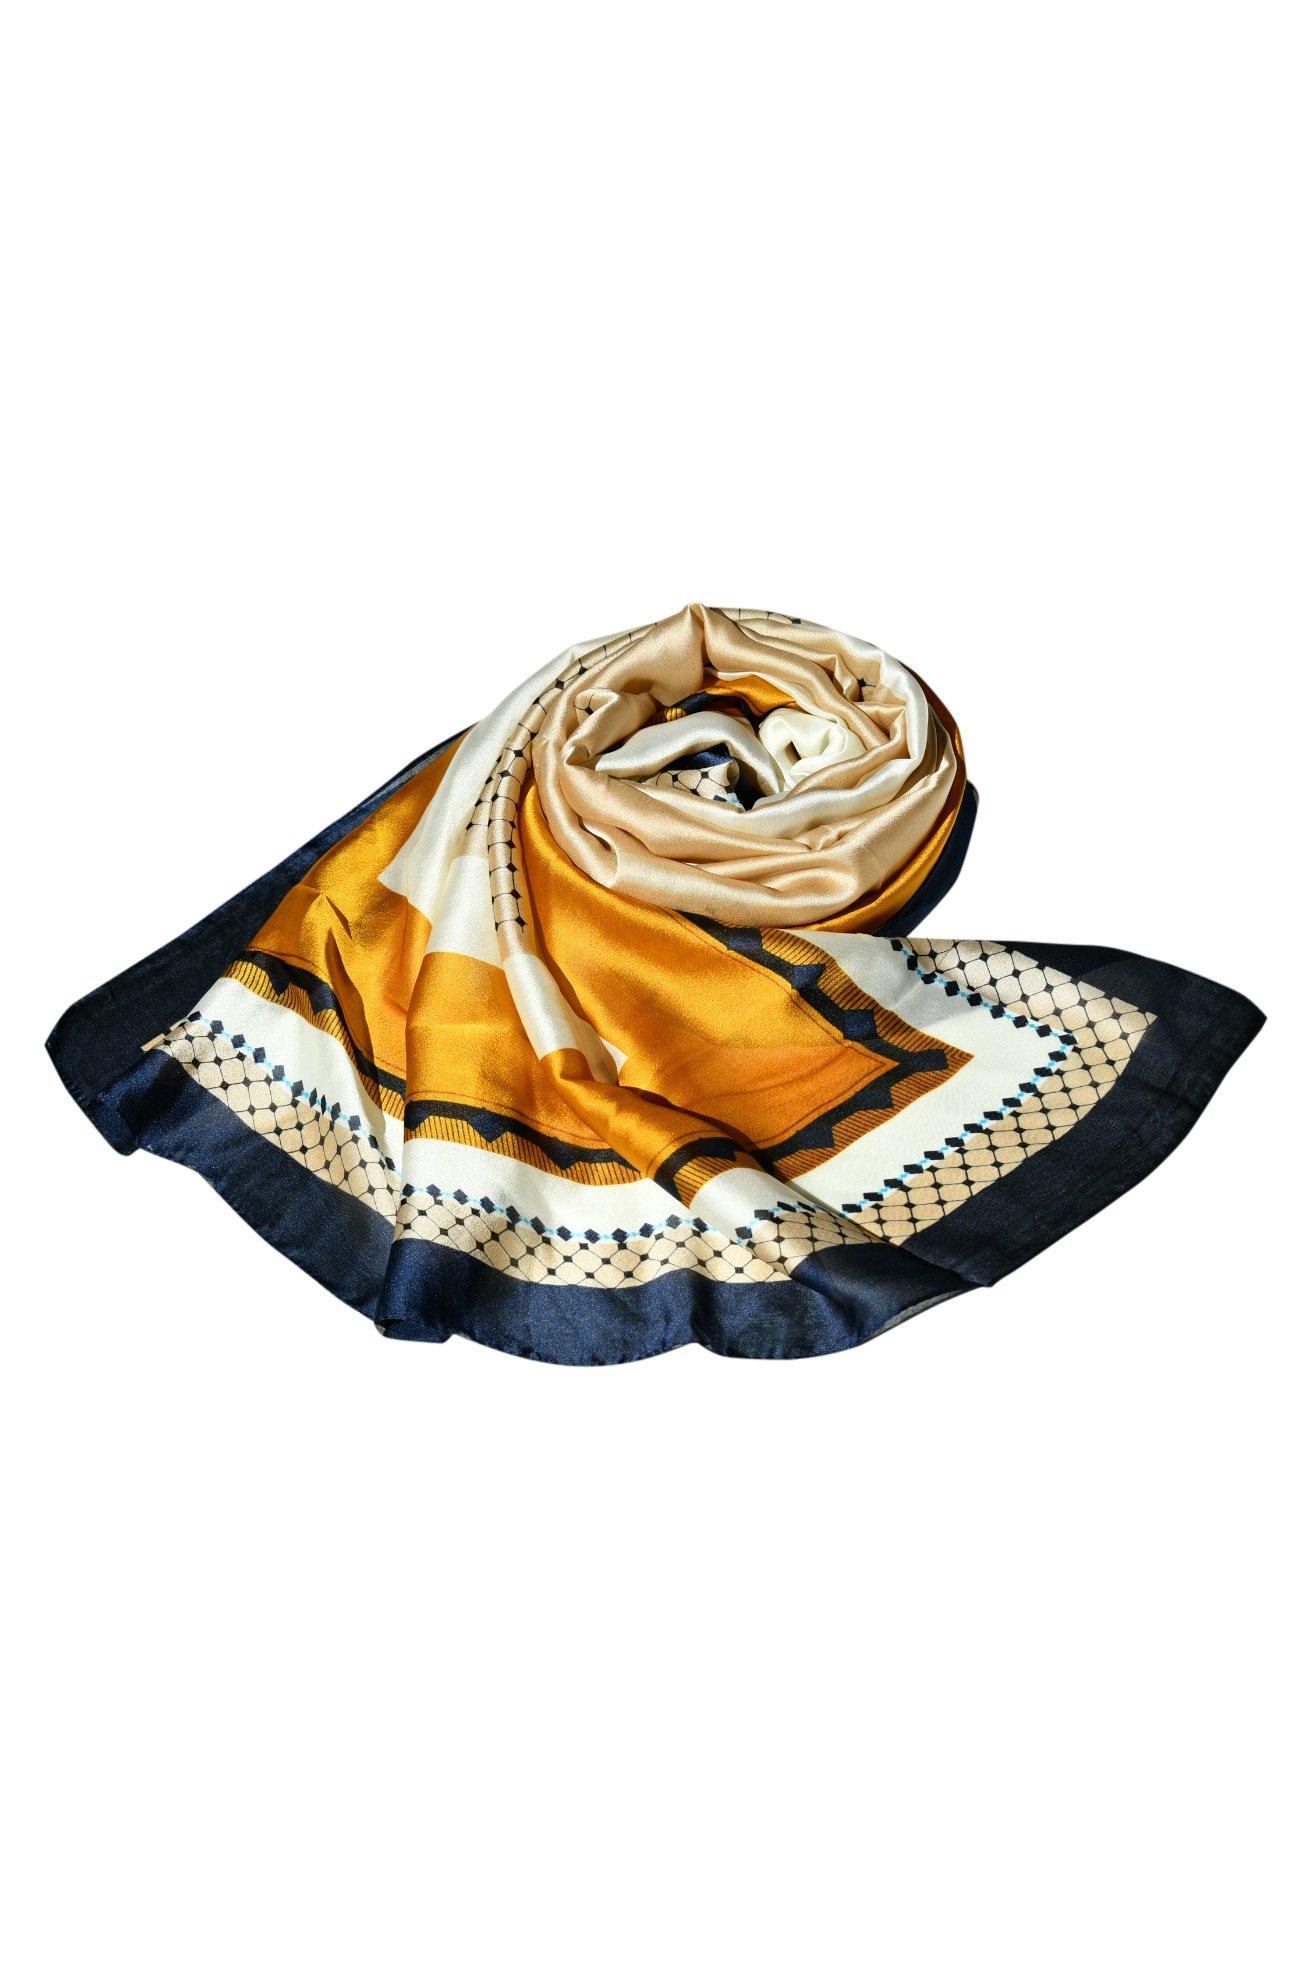 Высококачественная шаль, модельерский шелковый шарф с принтом для женщин, стильный шелковый платок, вечеринка, элегантность для любого наряда Blue Chilli, мультиколор женский весенне осенний новый стильный шарф модный роскошный английский ветрозащитный шарф 100% шелковая шаль модный длинный шарф